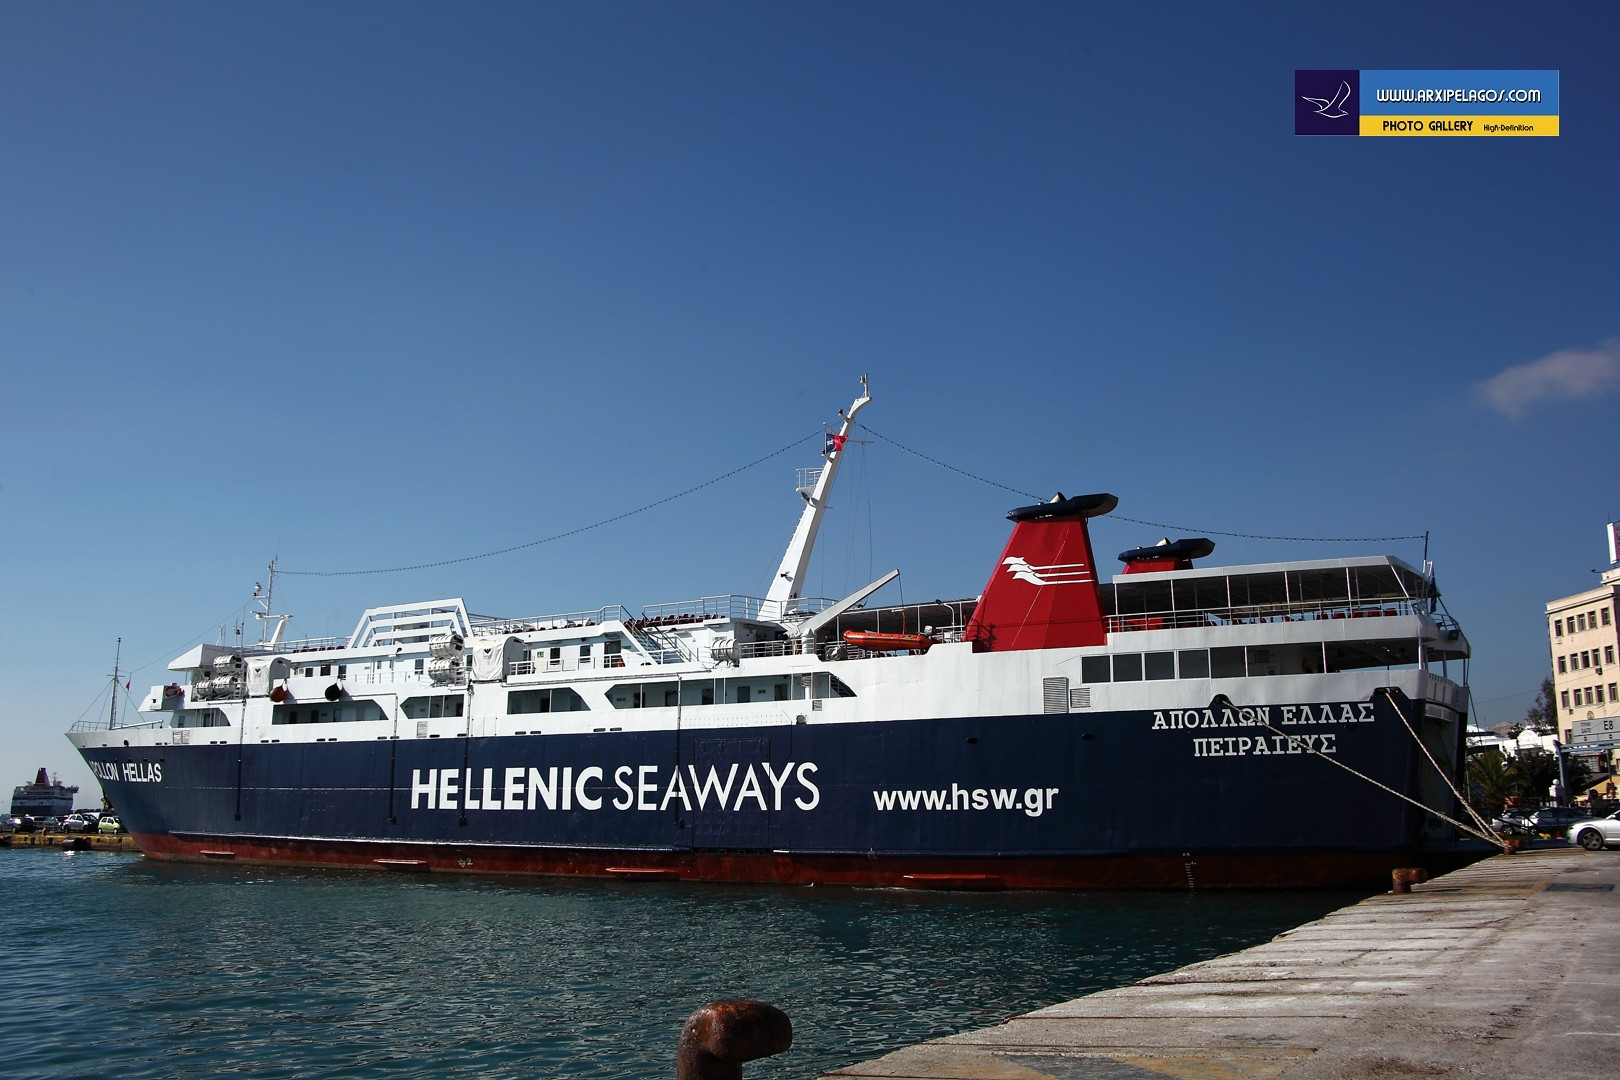 Μηχανική βλάβη παρουσίασε εν πλω το πλοίο «Απόλλων Ελλάς»- Μεταφέρει 455 επιβάτες